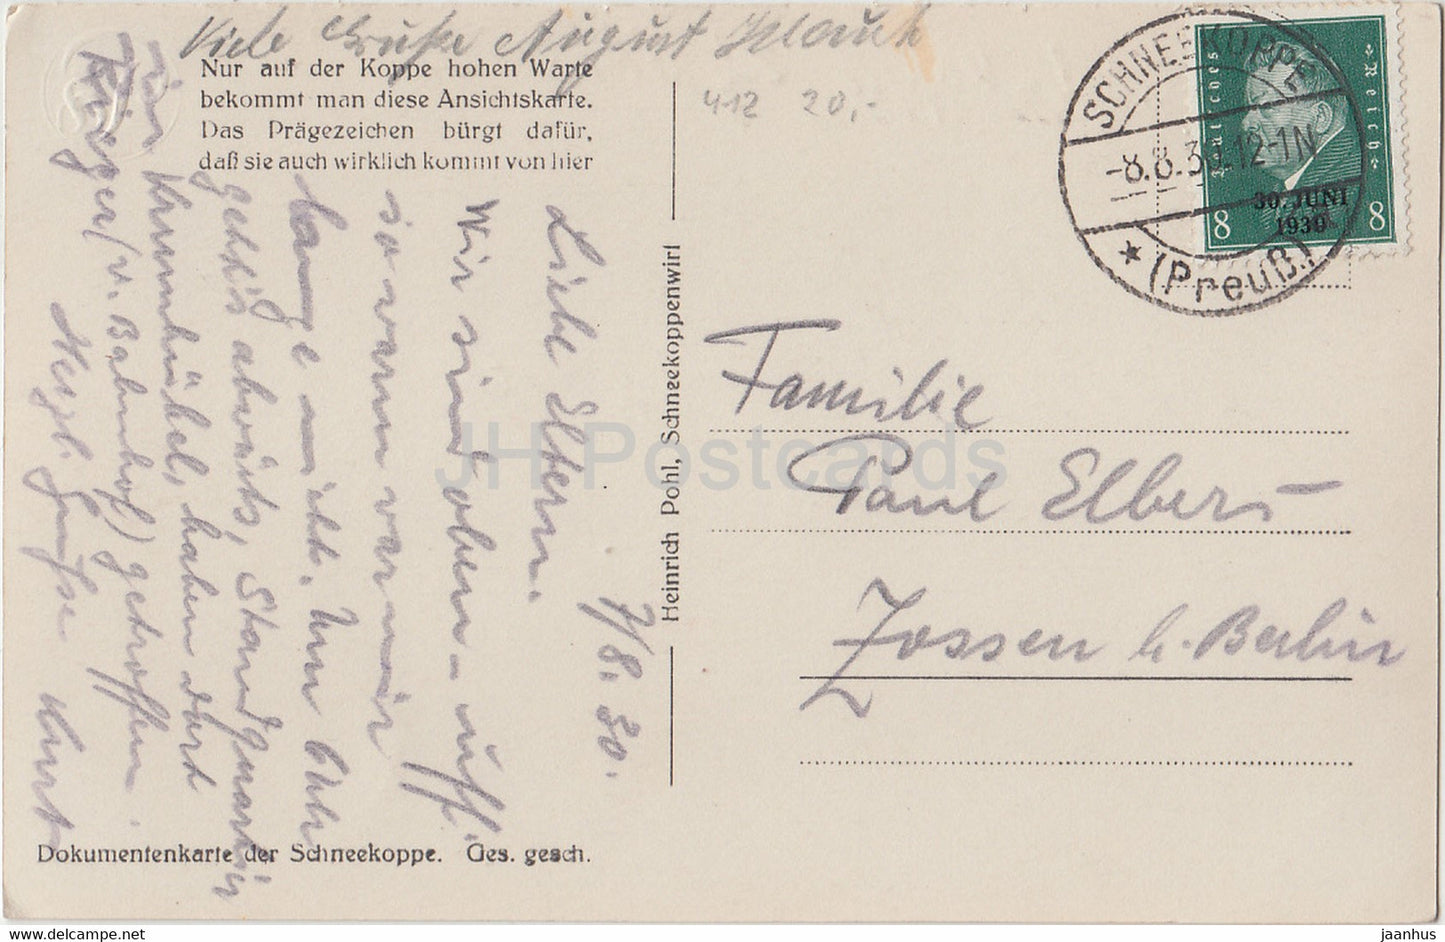 Riesengebirge - Die Schneekoppe - 1605 m von Osten Gesehen - carte postale ancienne - 1930 - Pologne - utilisé